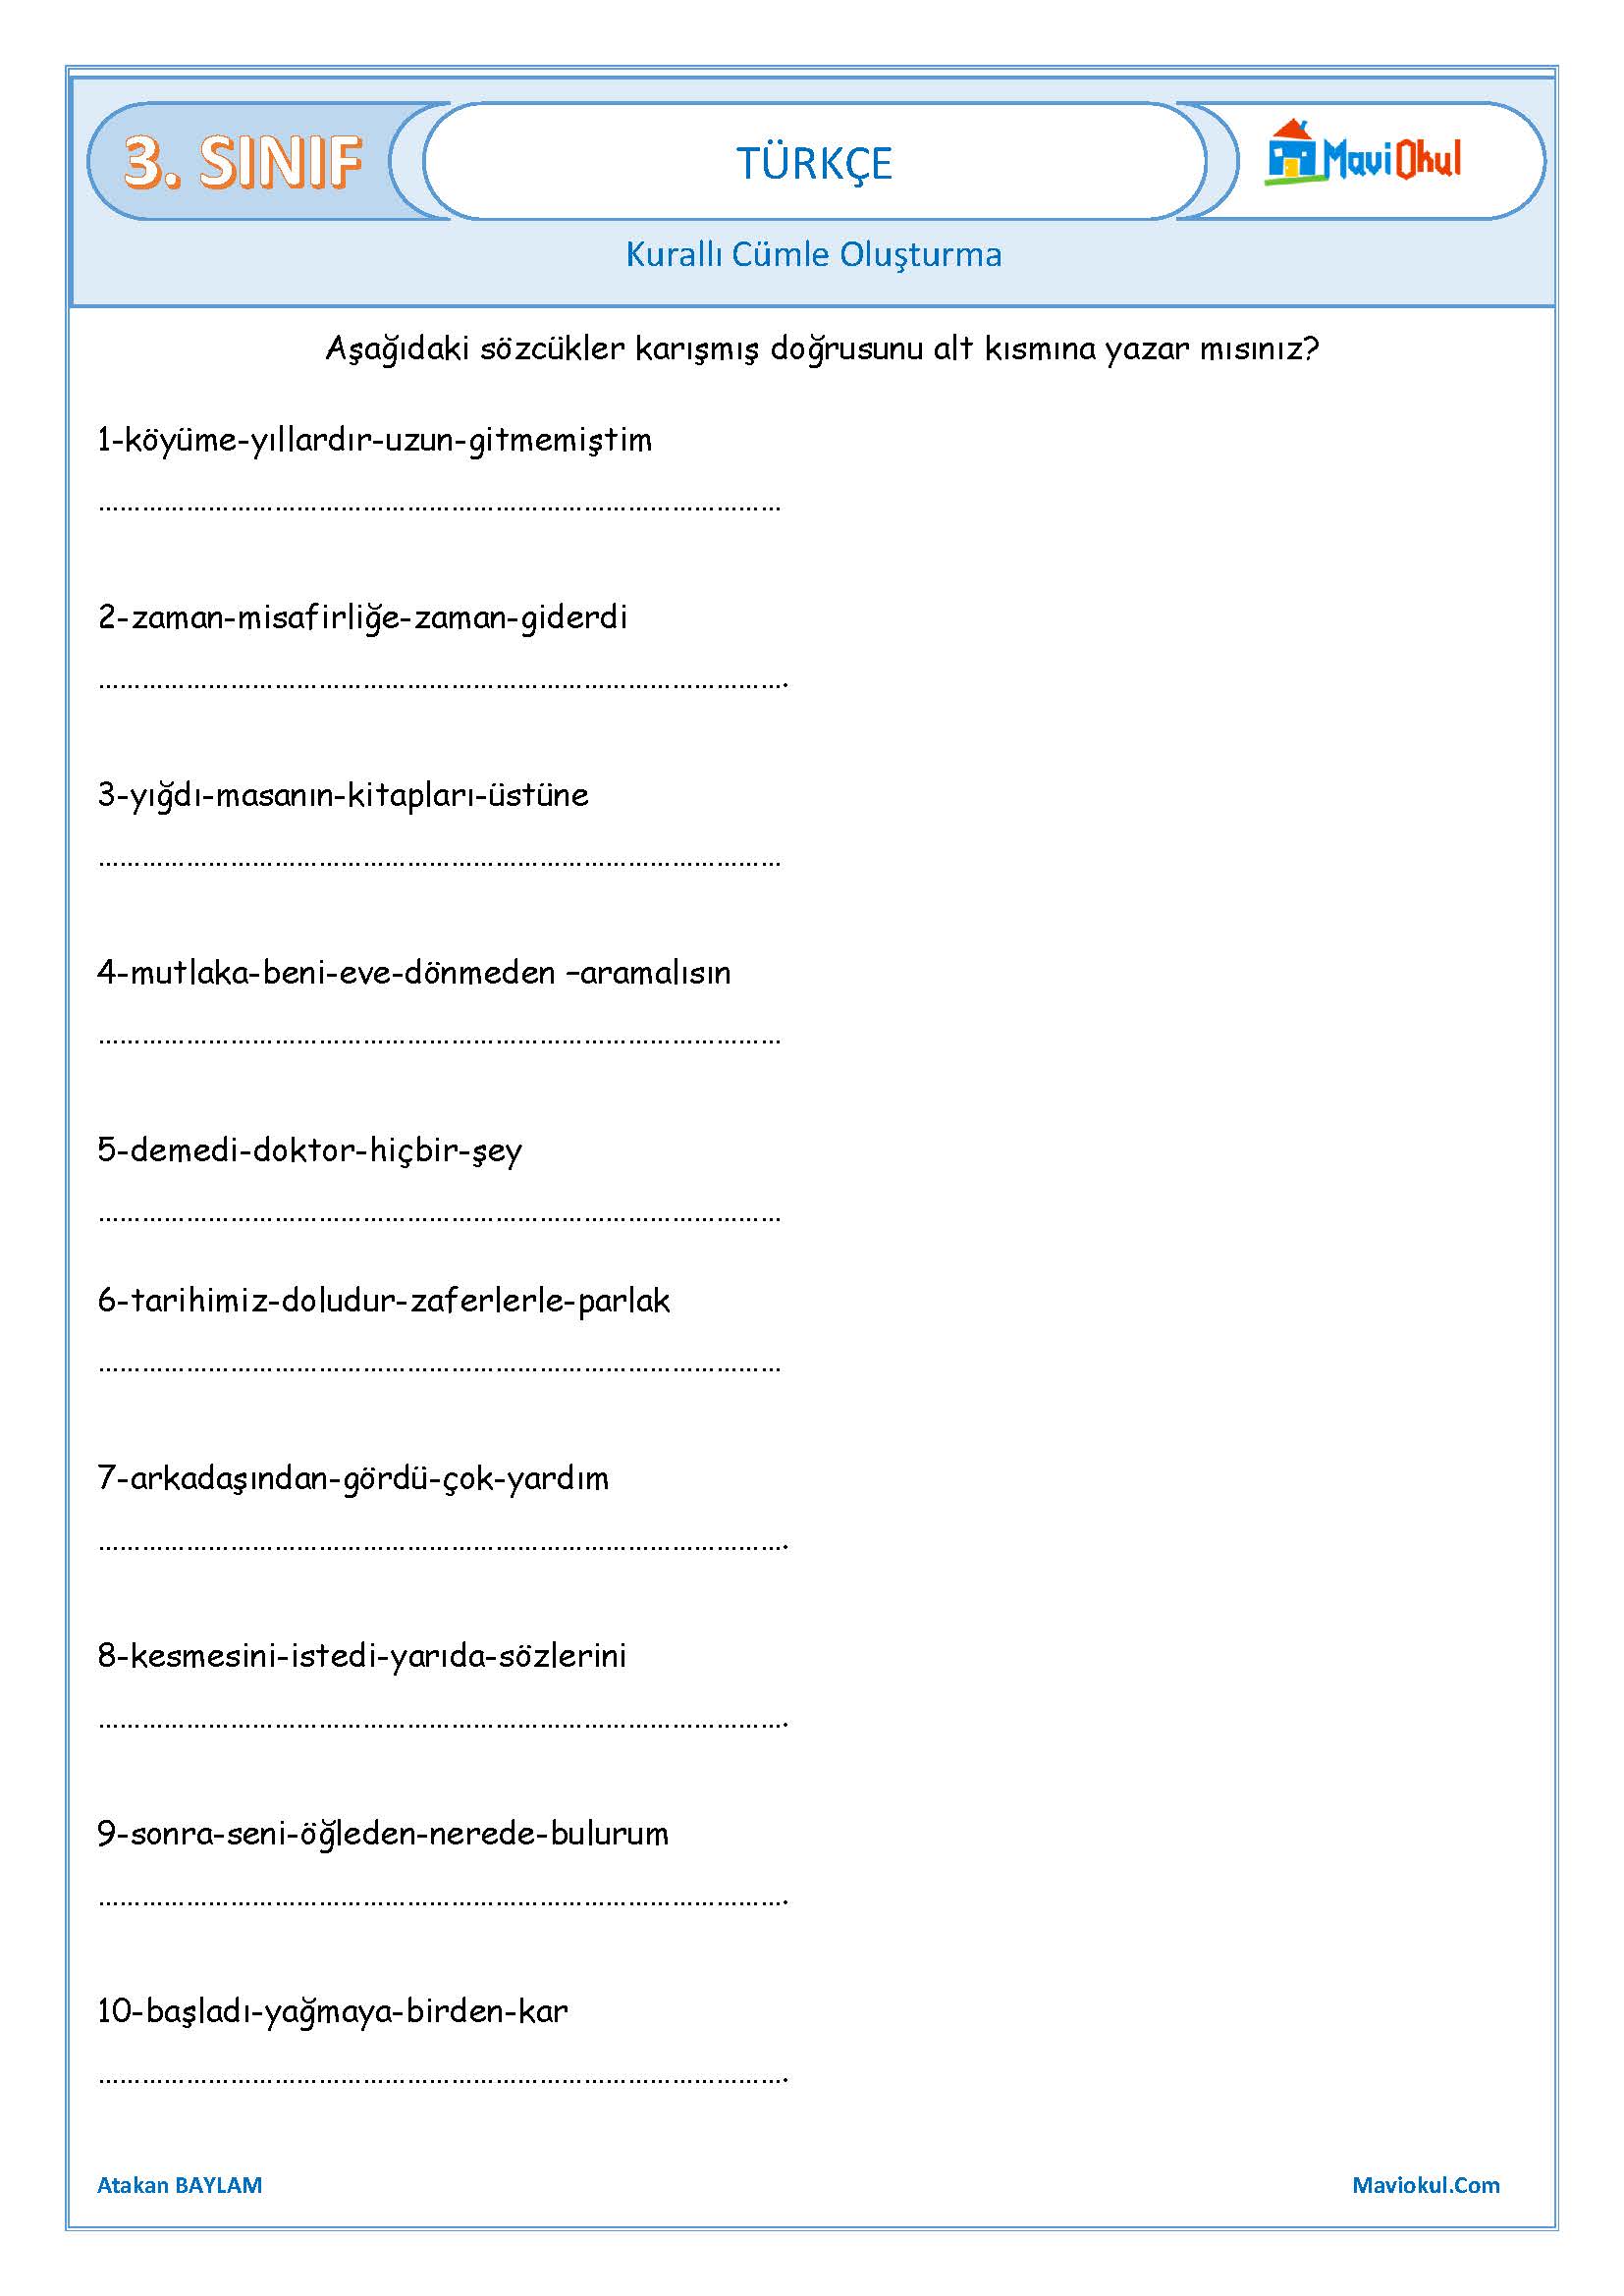 3. Sınıf Türkçe Anlamlı ve Kurallı Cümle Oluşturma